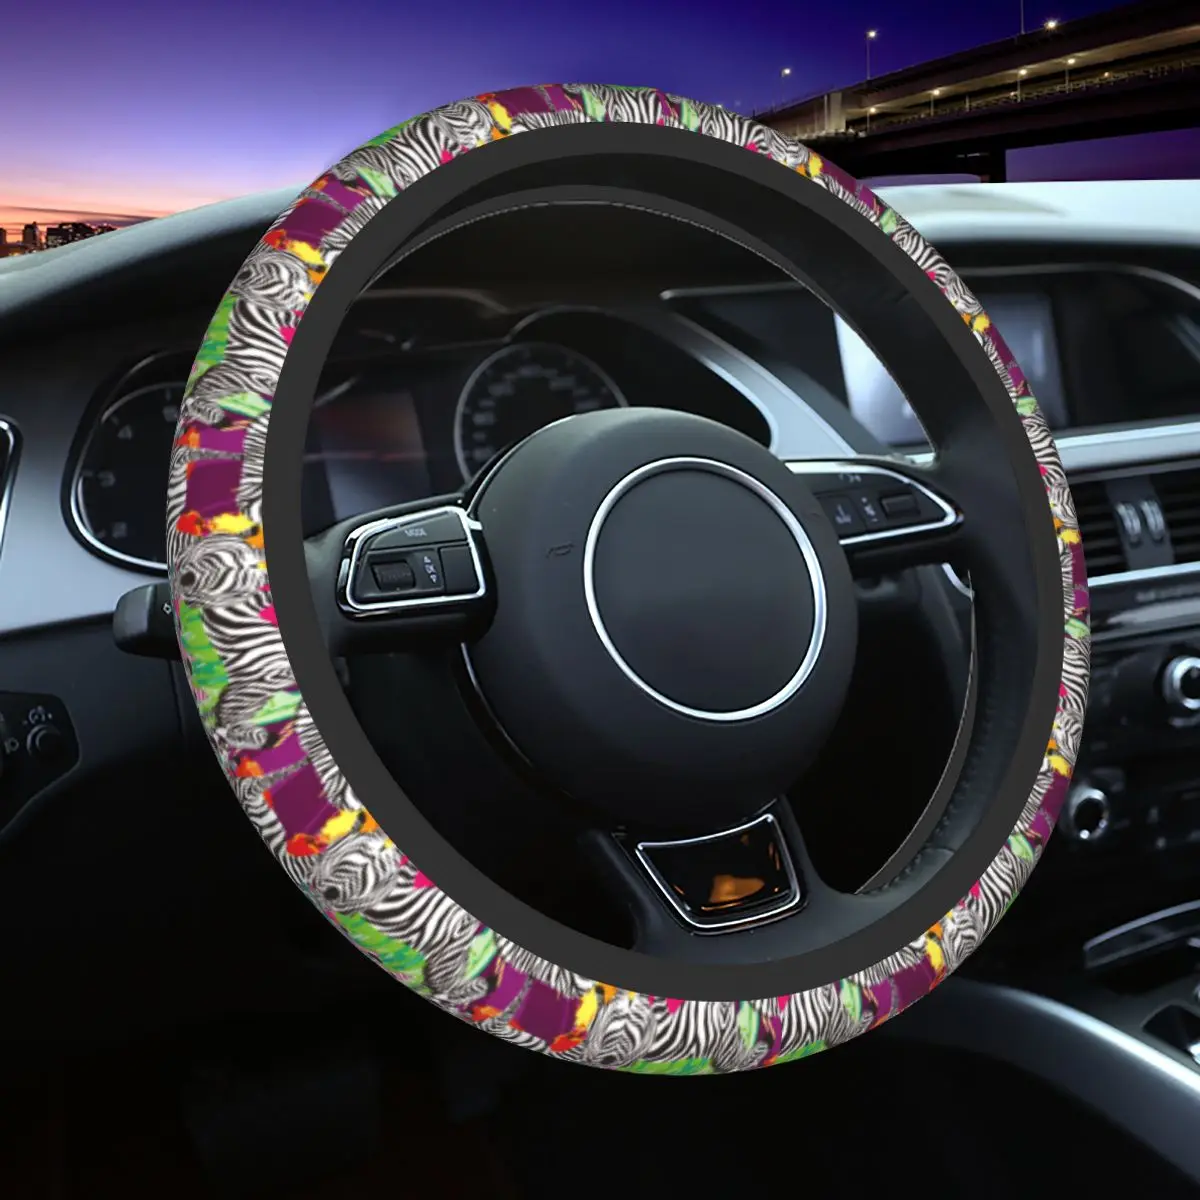 

Чехлы на руль автомобиля 37-38, универсальные модные украшения для руля в виде зебры, с красочным рисунком животных